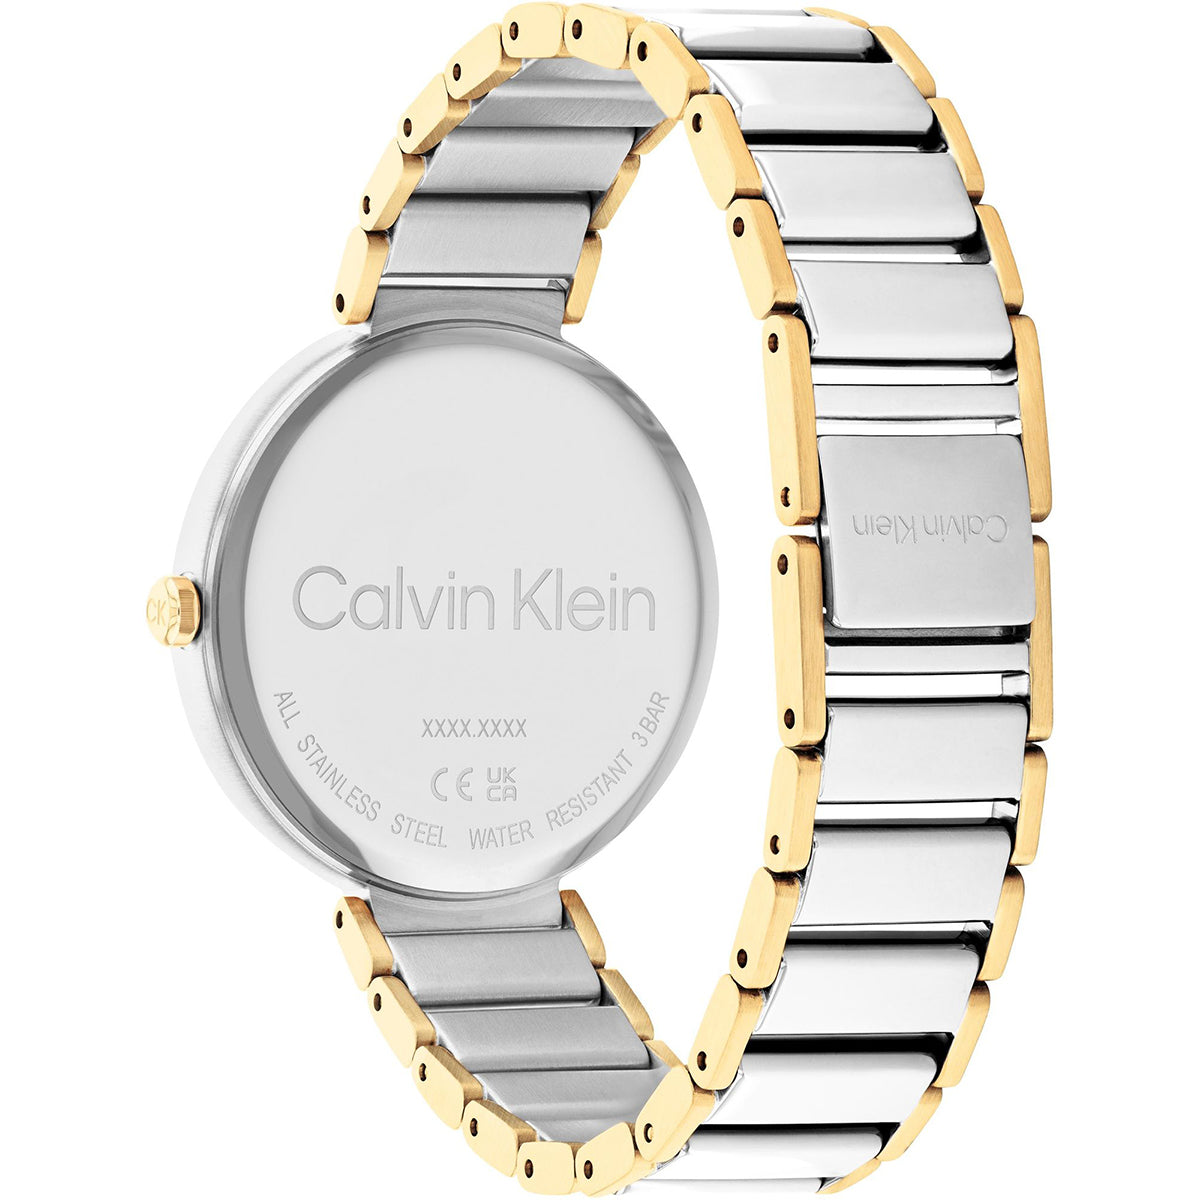 Calvin Klein - Timeless - 25200134